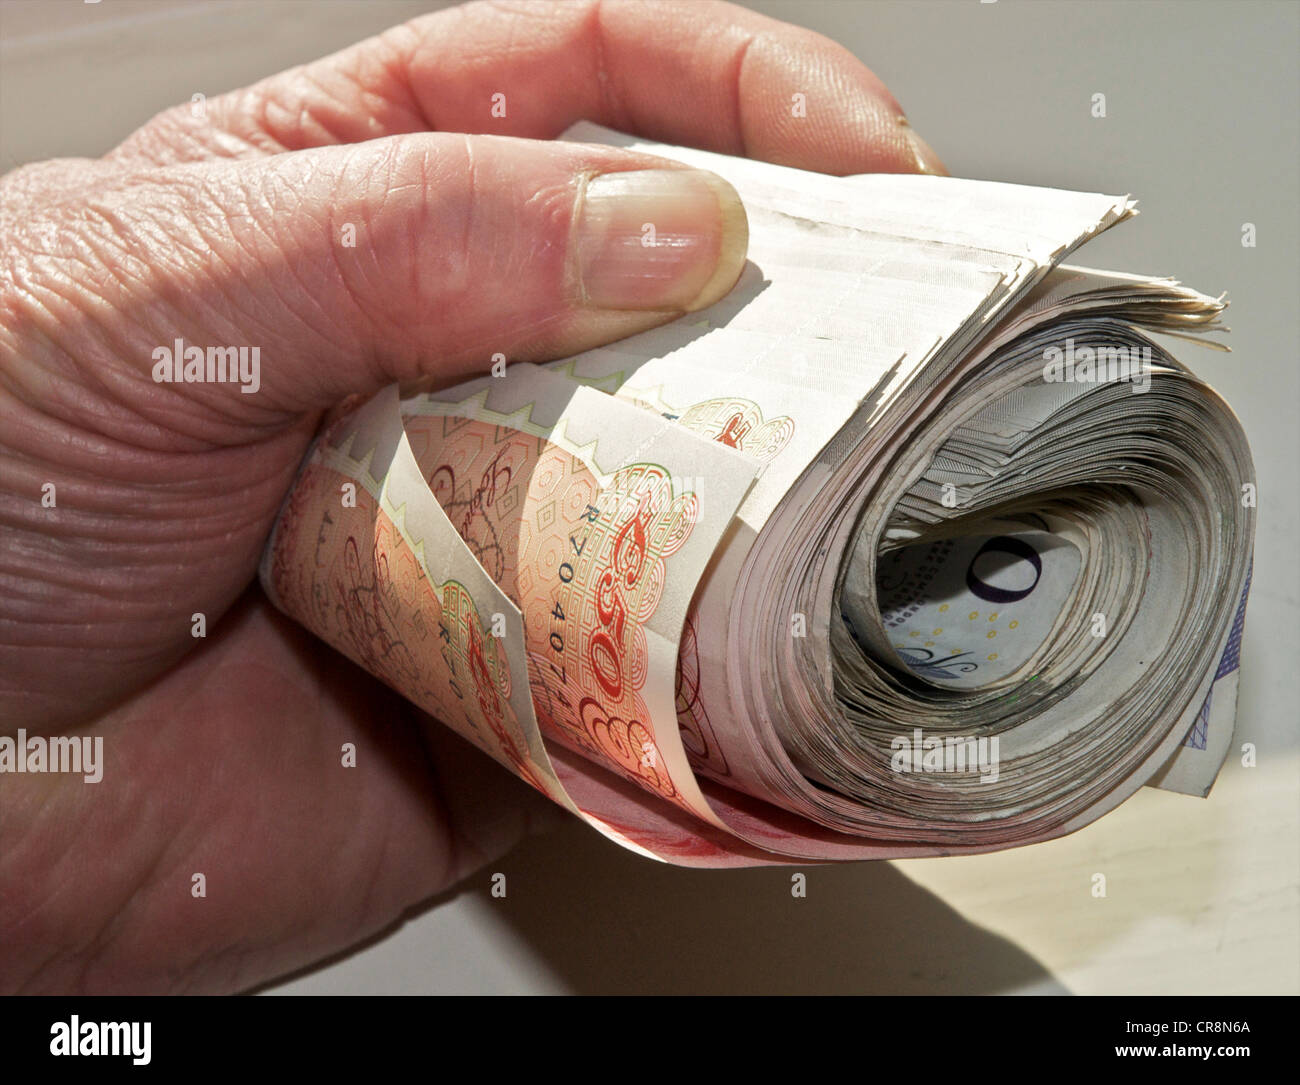 Contanti in mano - bundle di sterling note tenuto in una mano il denaro NEL REGNO UNITO Foto Stock